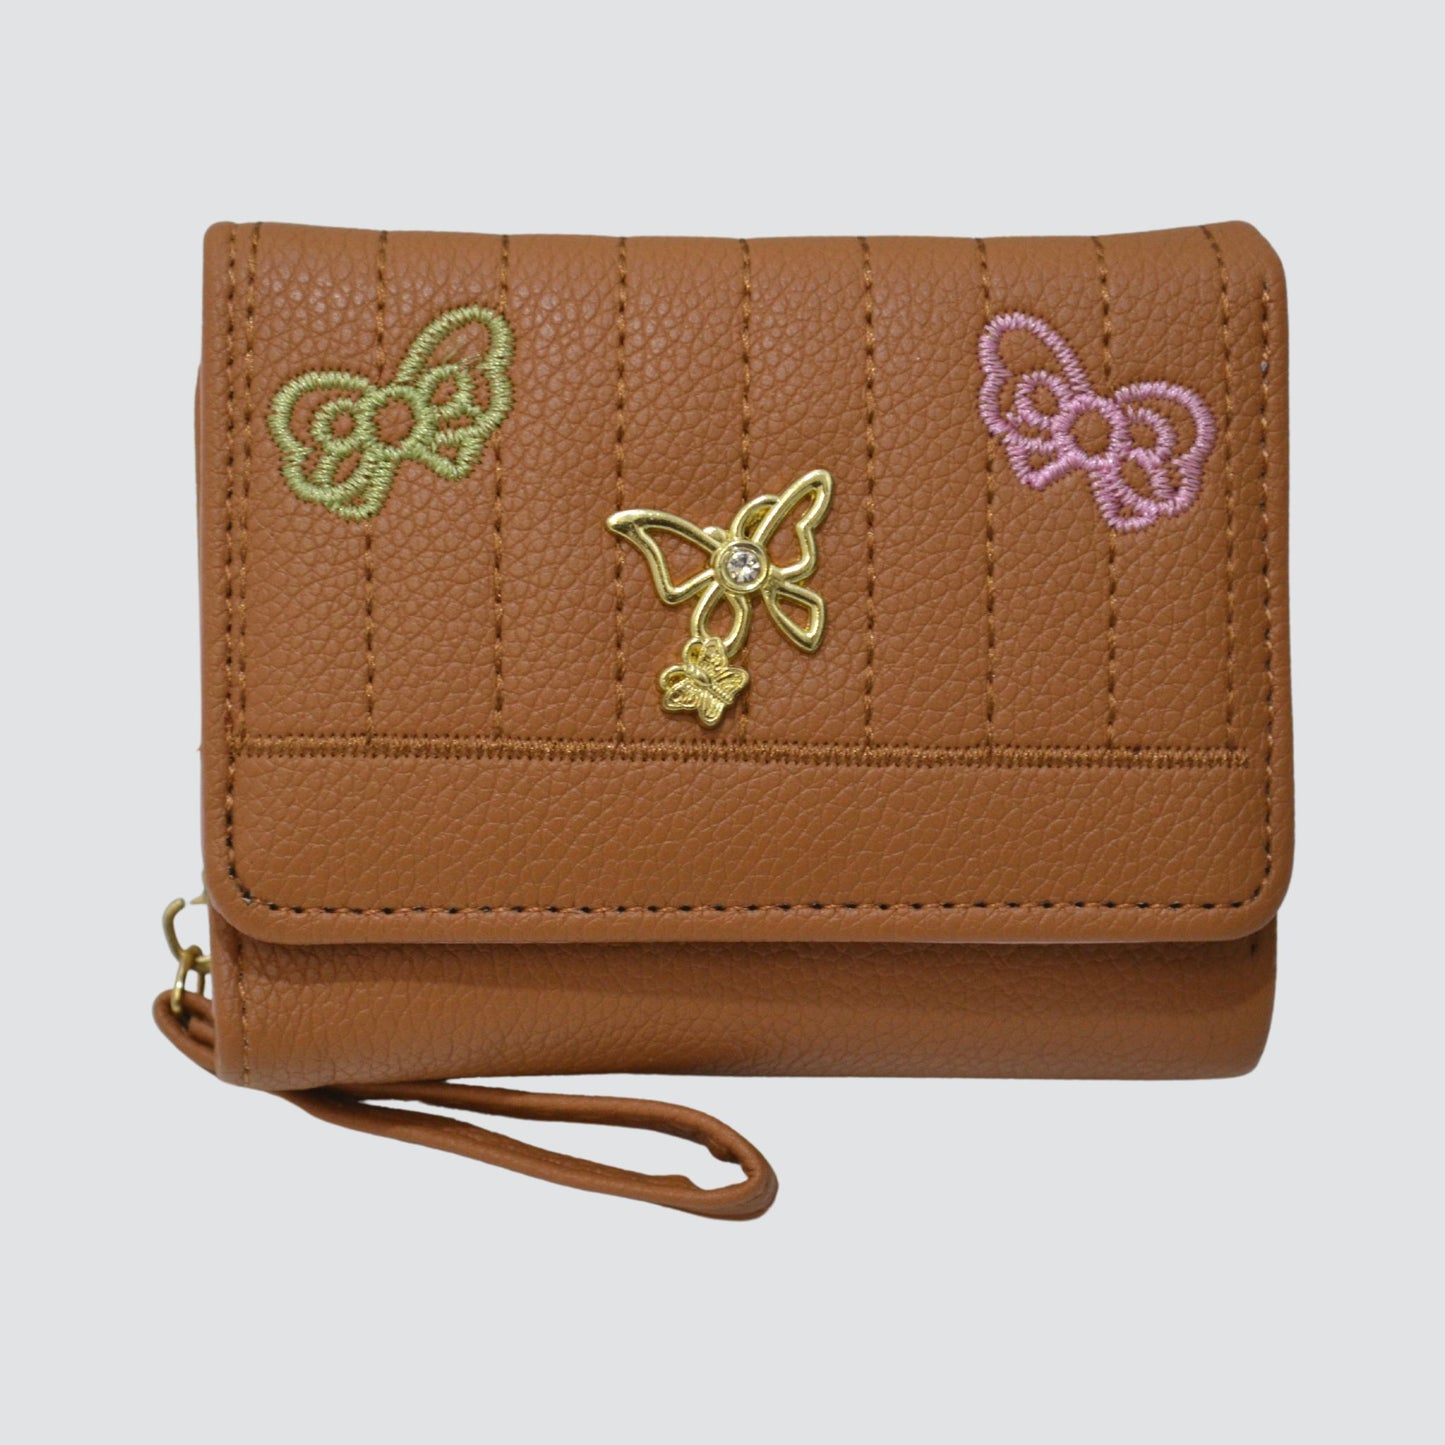 S3202 Butterfly Mini Folding PU Leather Wallet